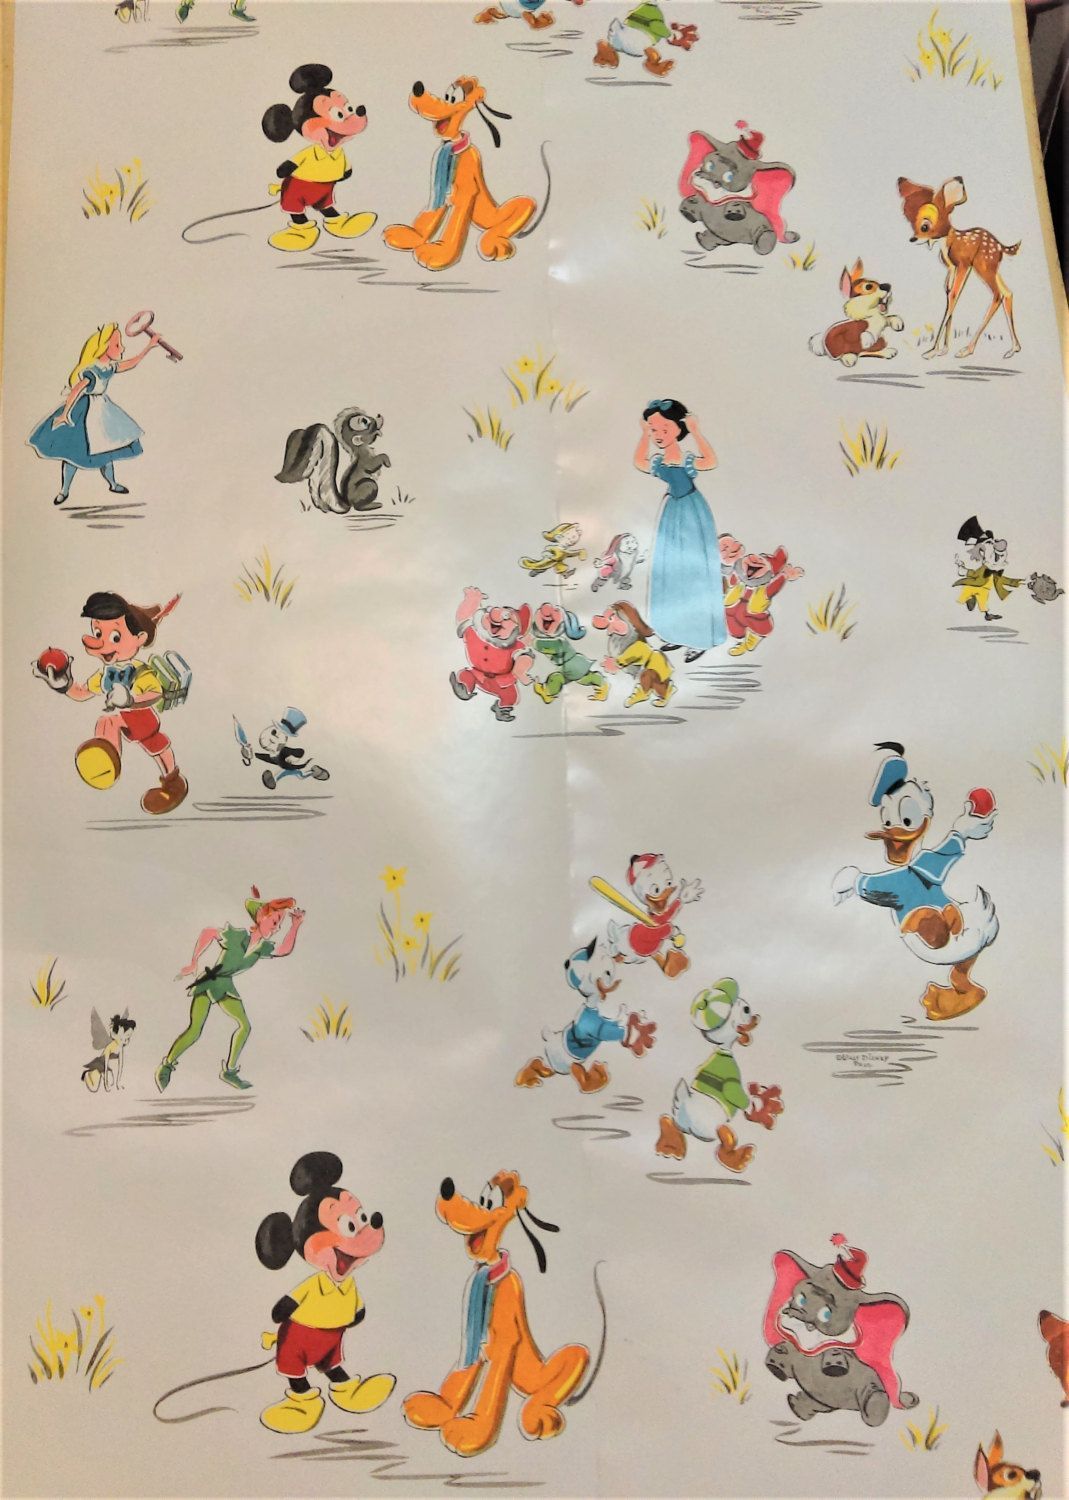 Aesthetic Vintage Disney Wallpapers